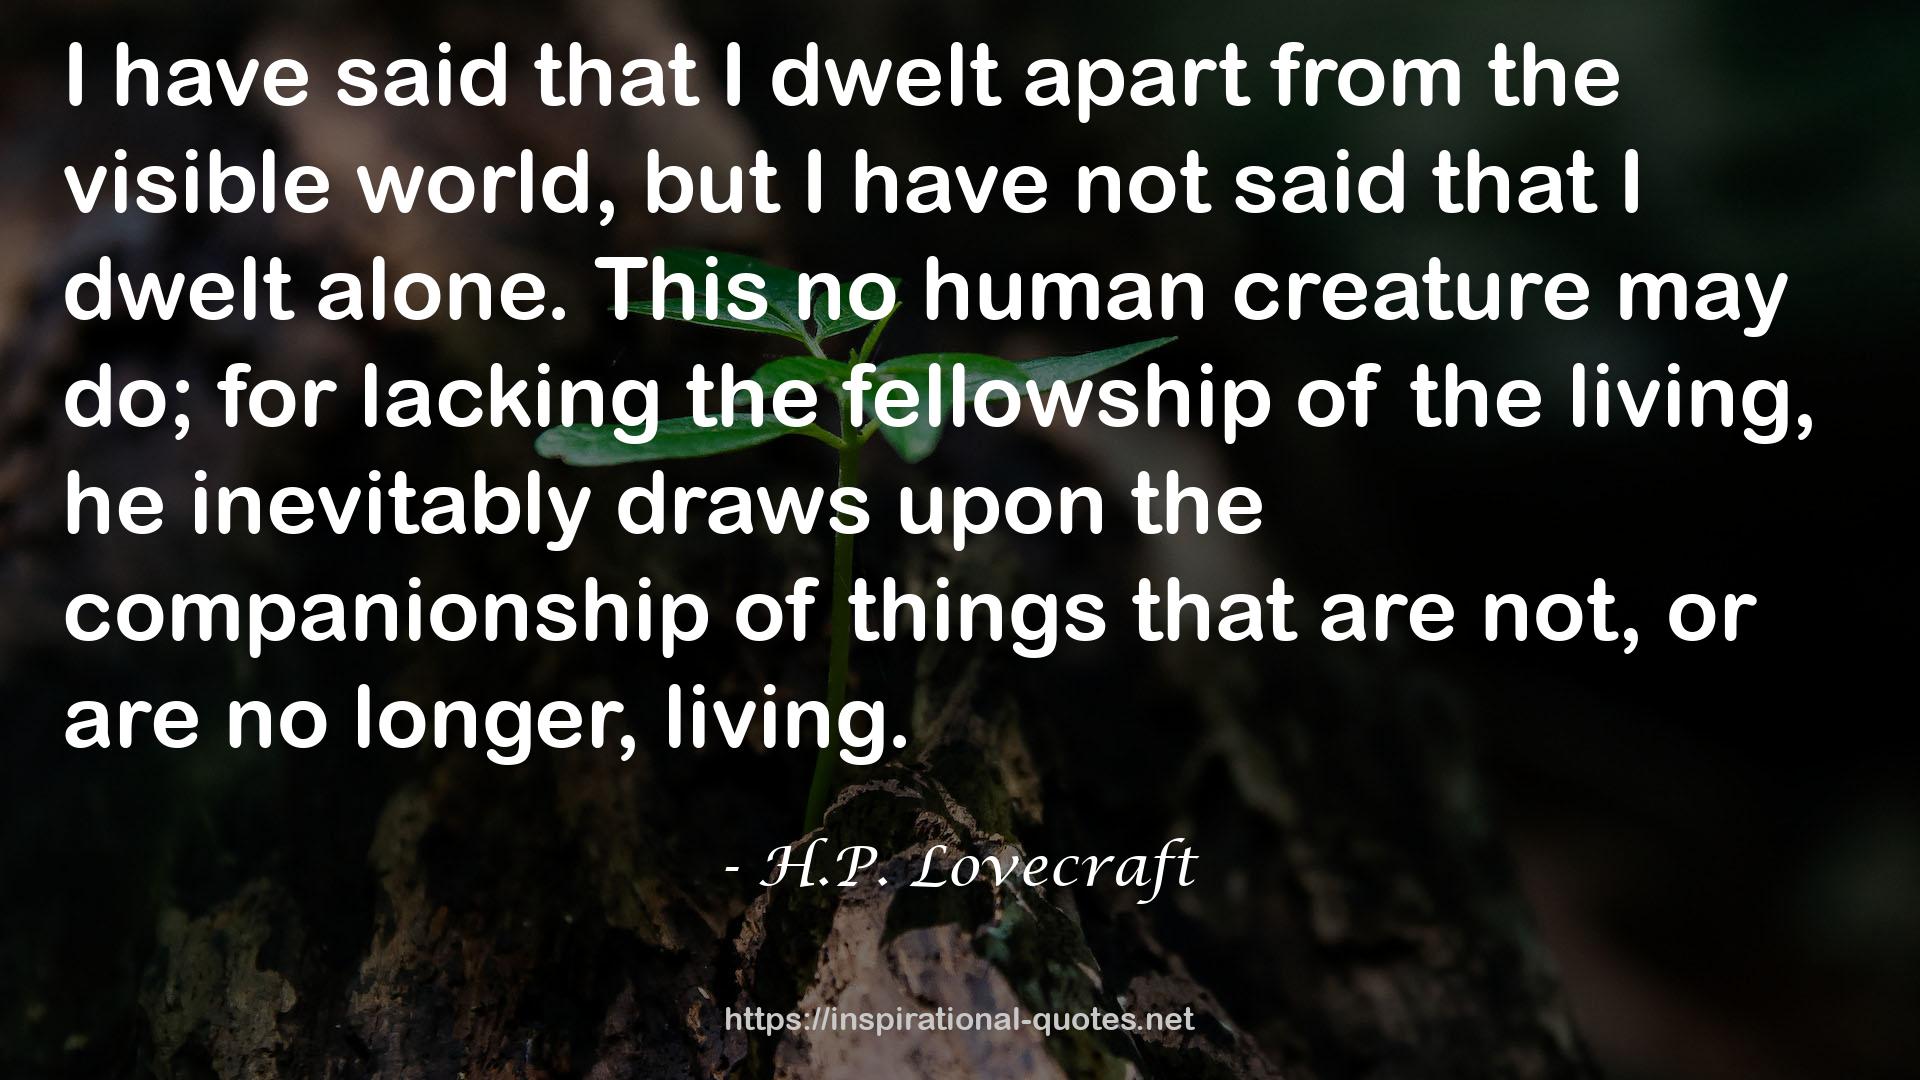 H.P. Lovecraft QUOTES